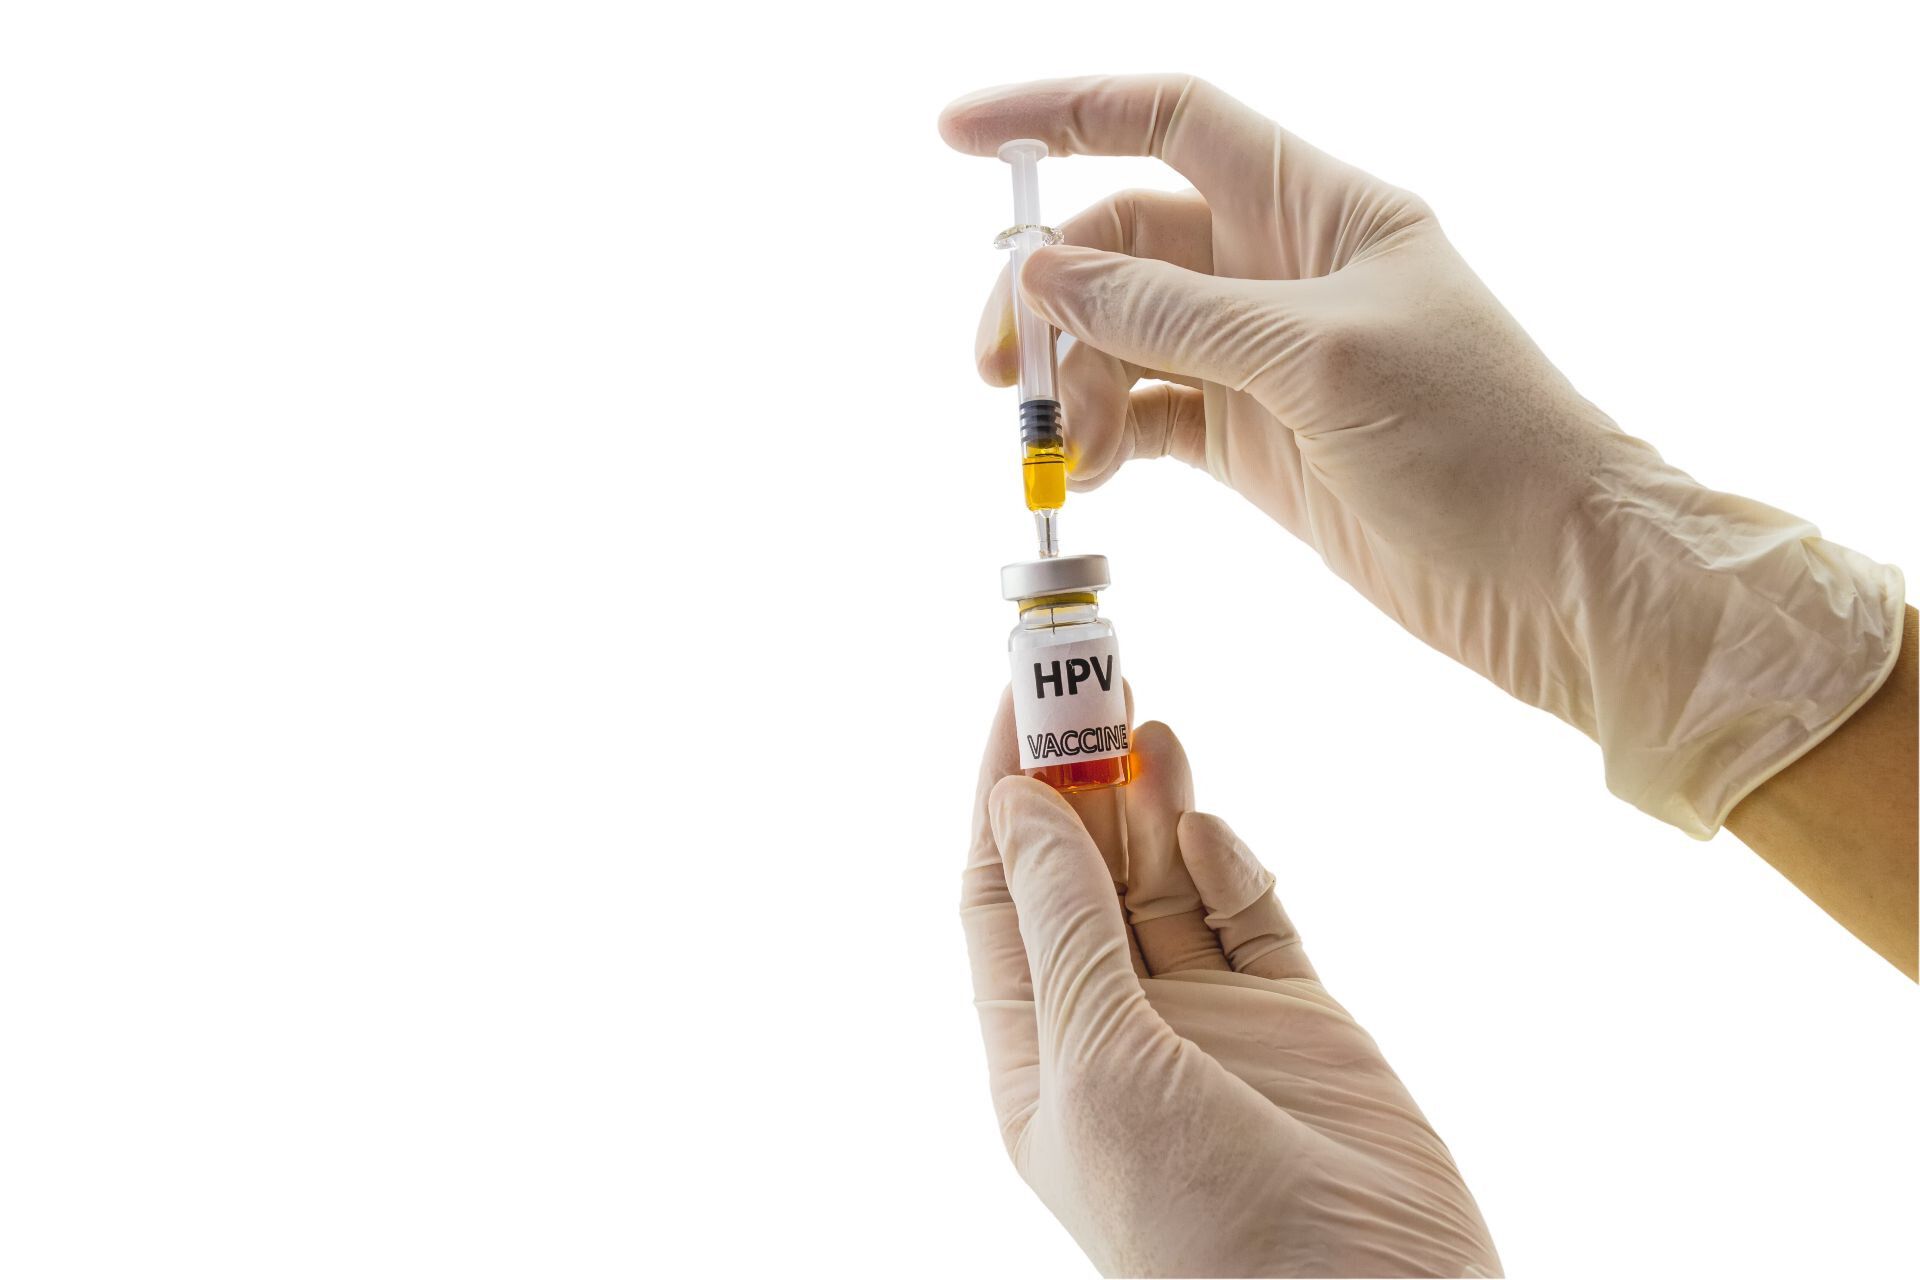 Nivelul de încredere al românilor în vaccinul HPV, peste media europeană